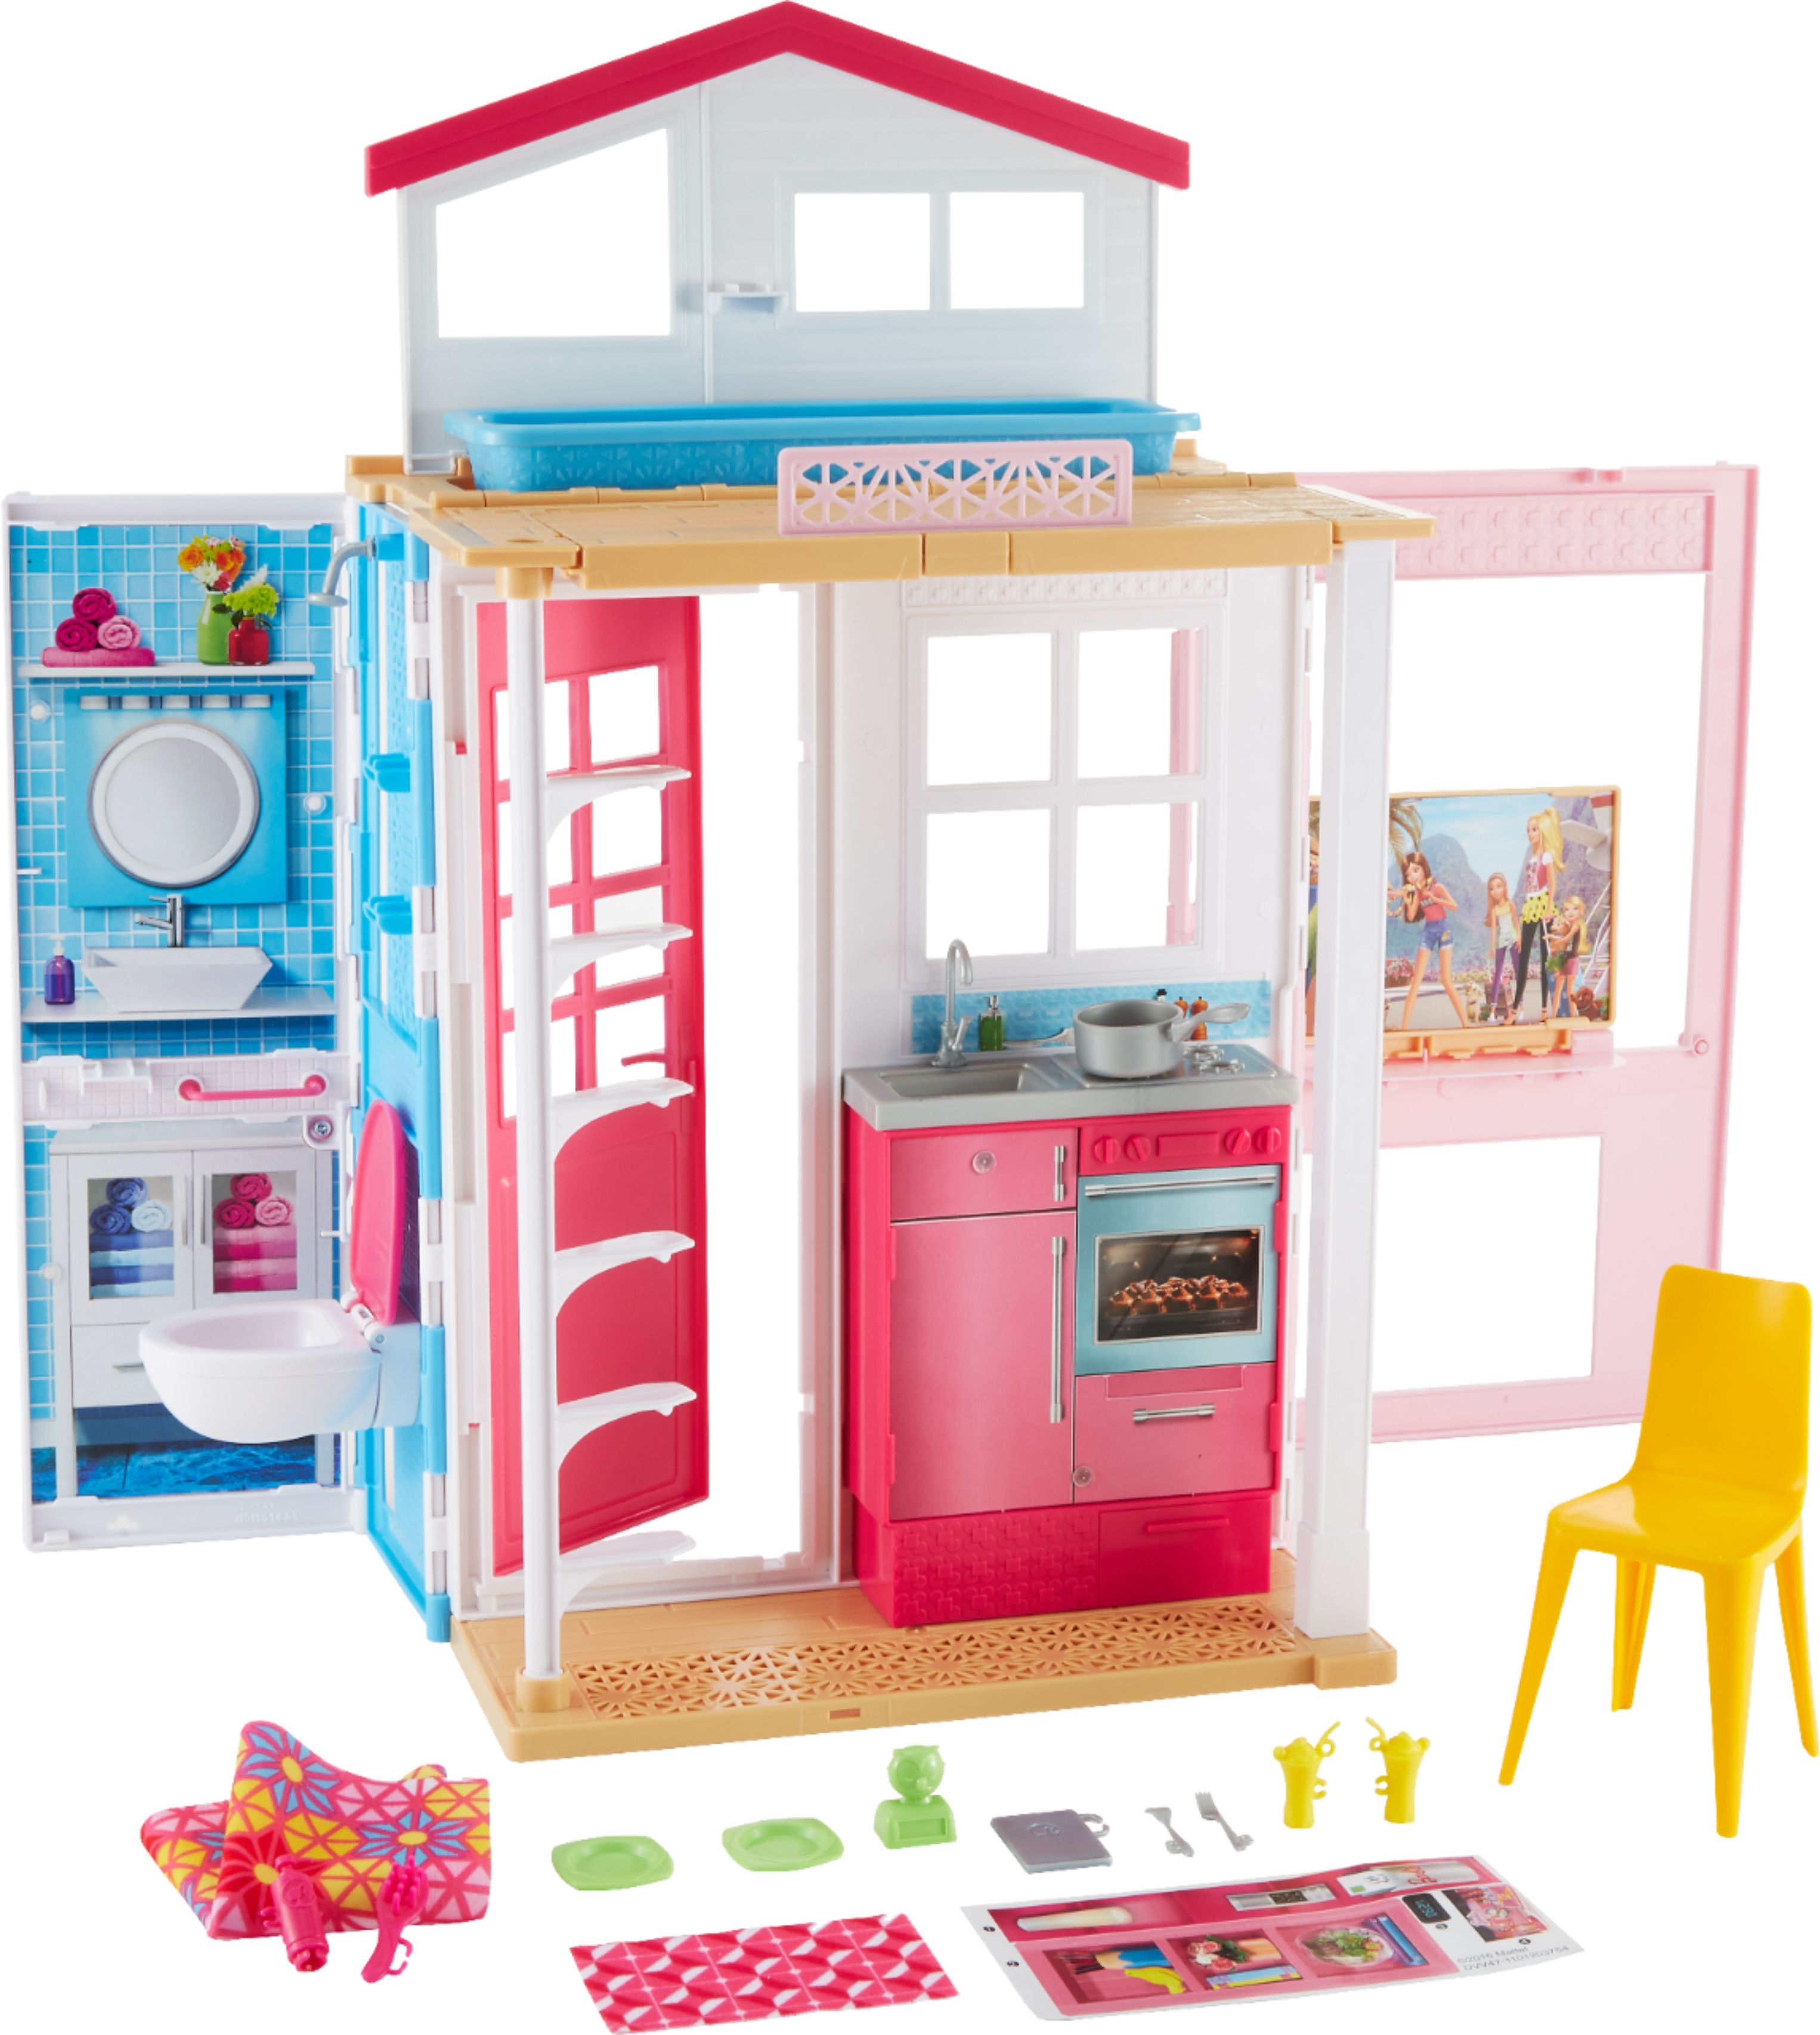 Charles Keasing Terug kijken leveren Best Buy: Barbie 2-Story House DVV47